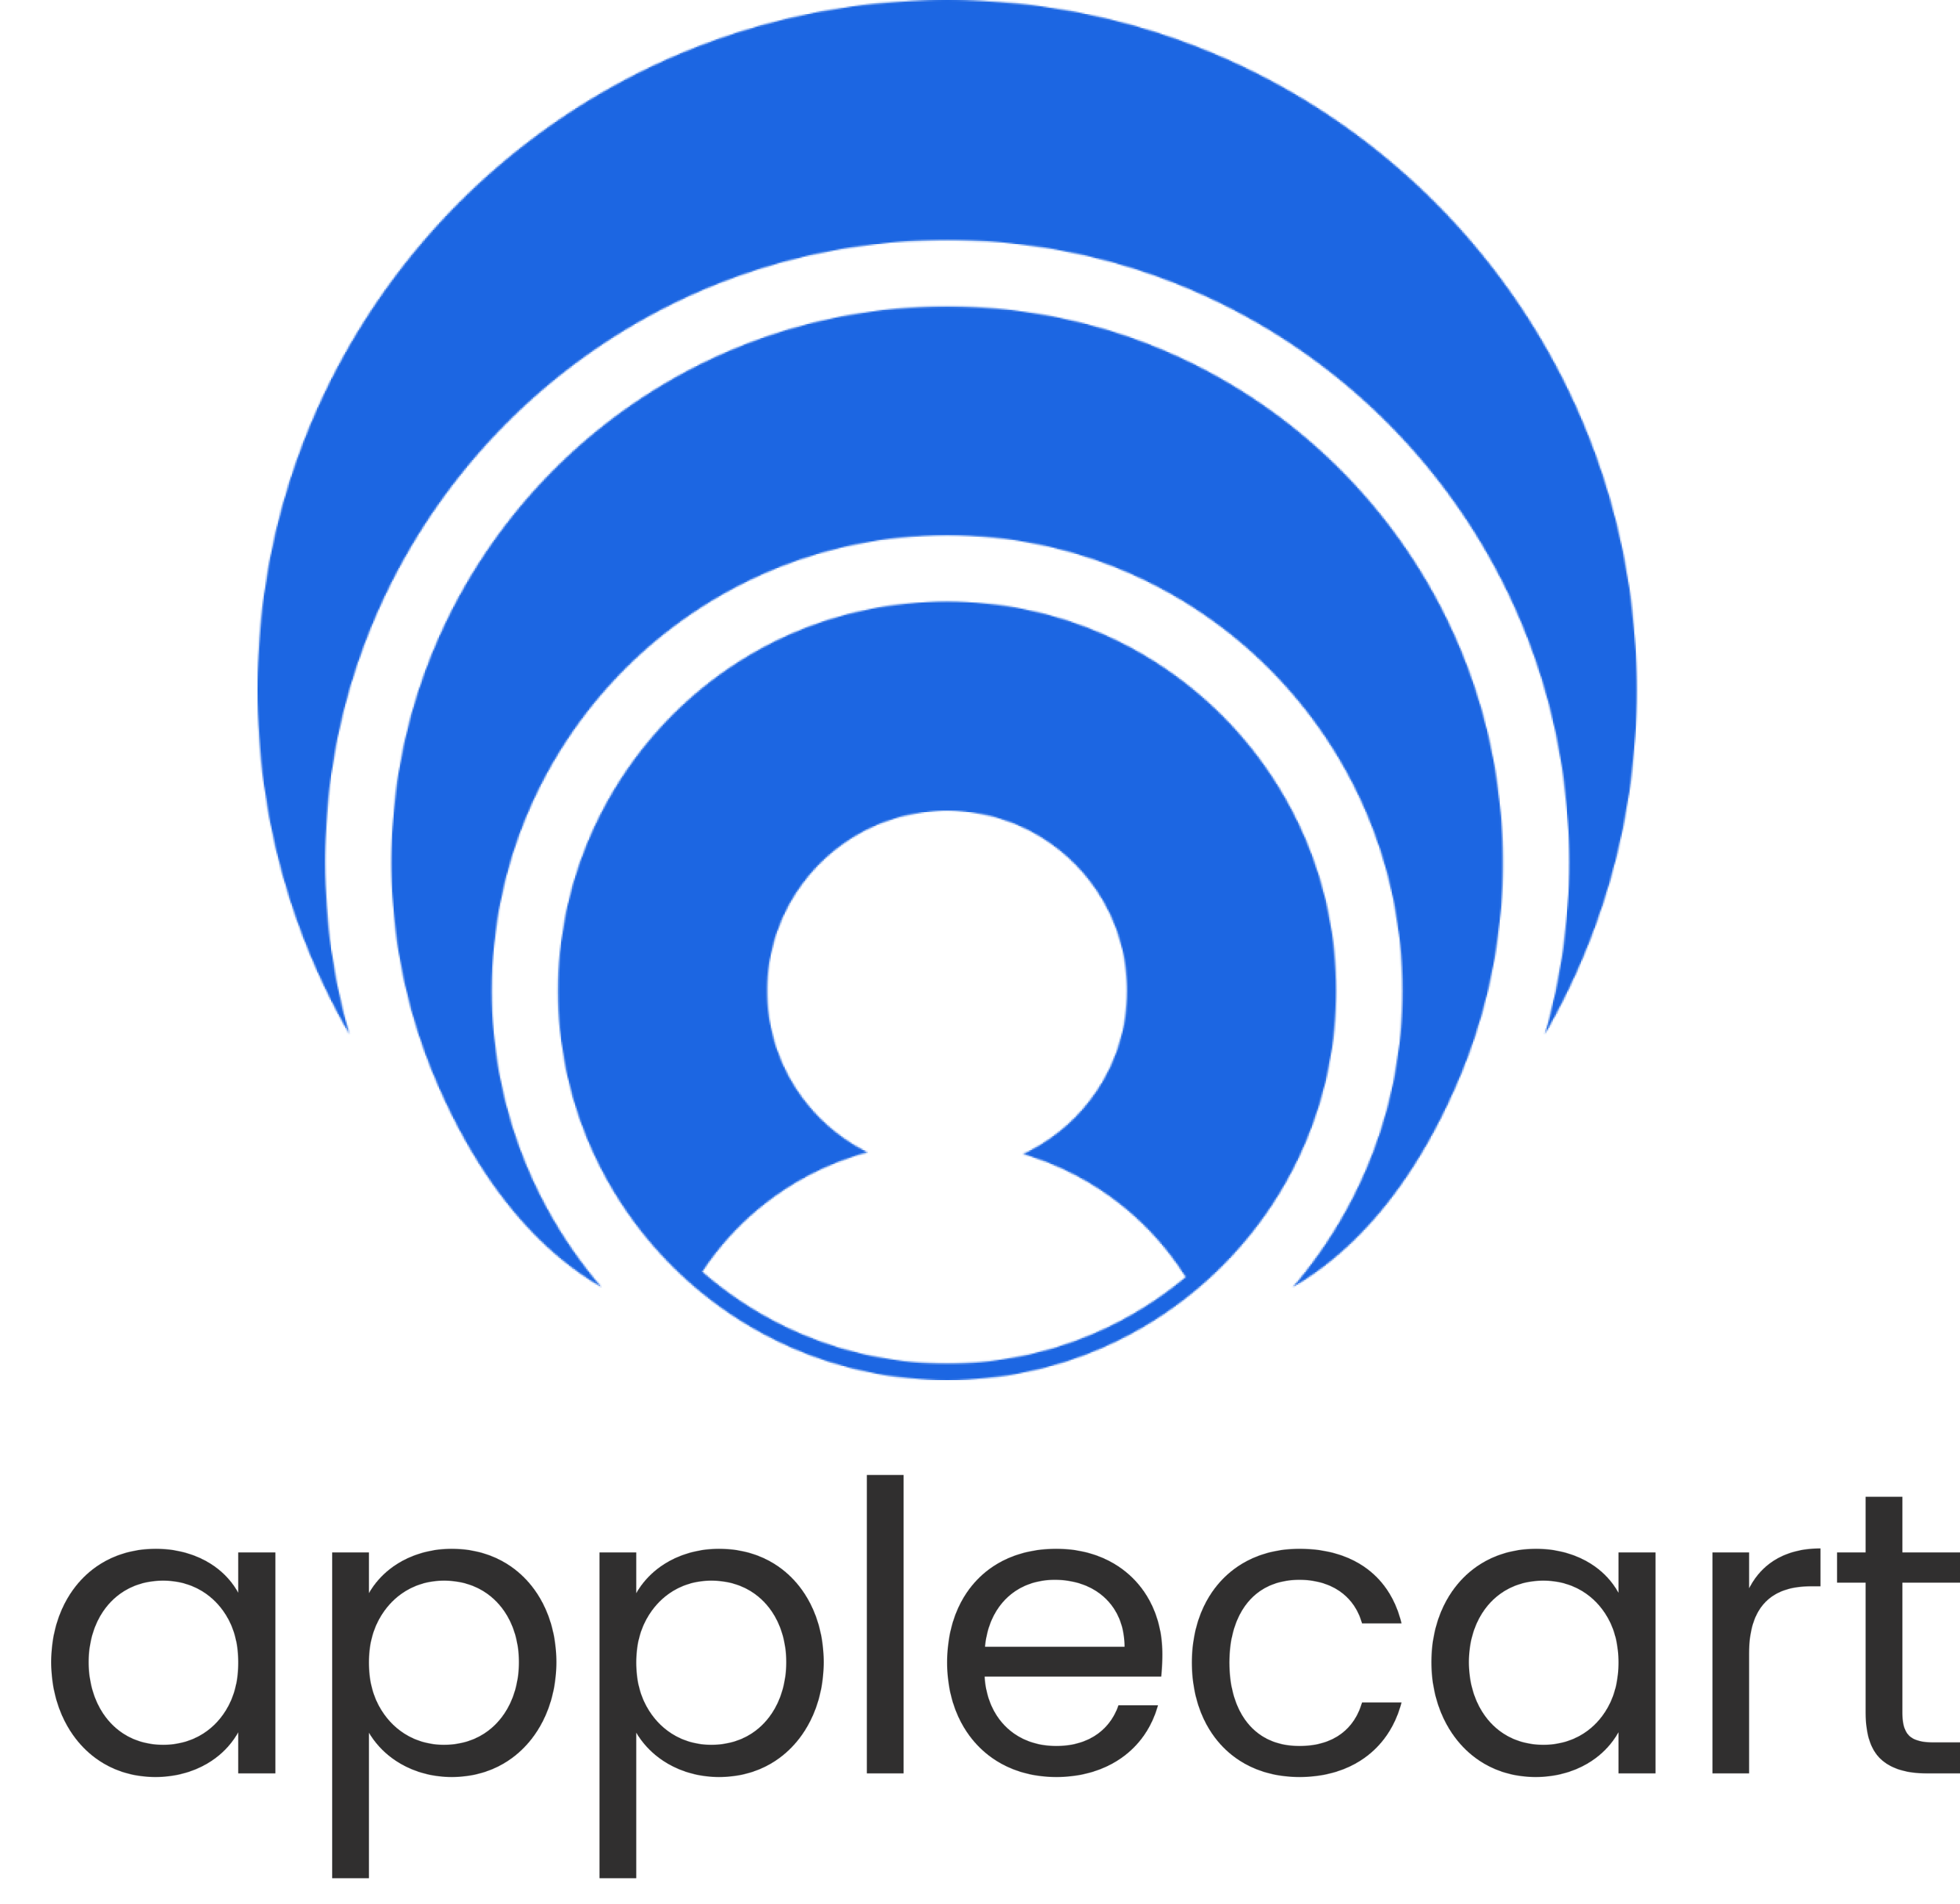 Applecart